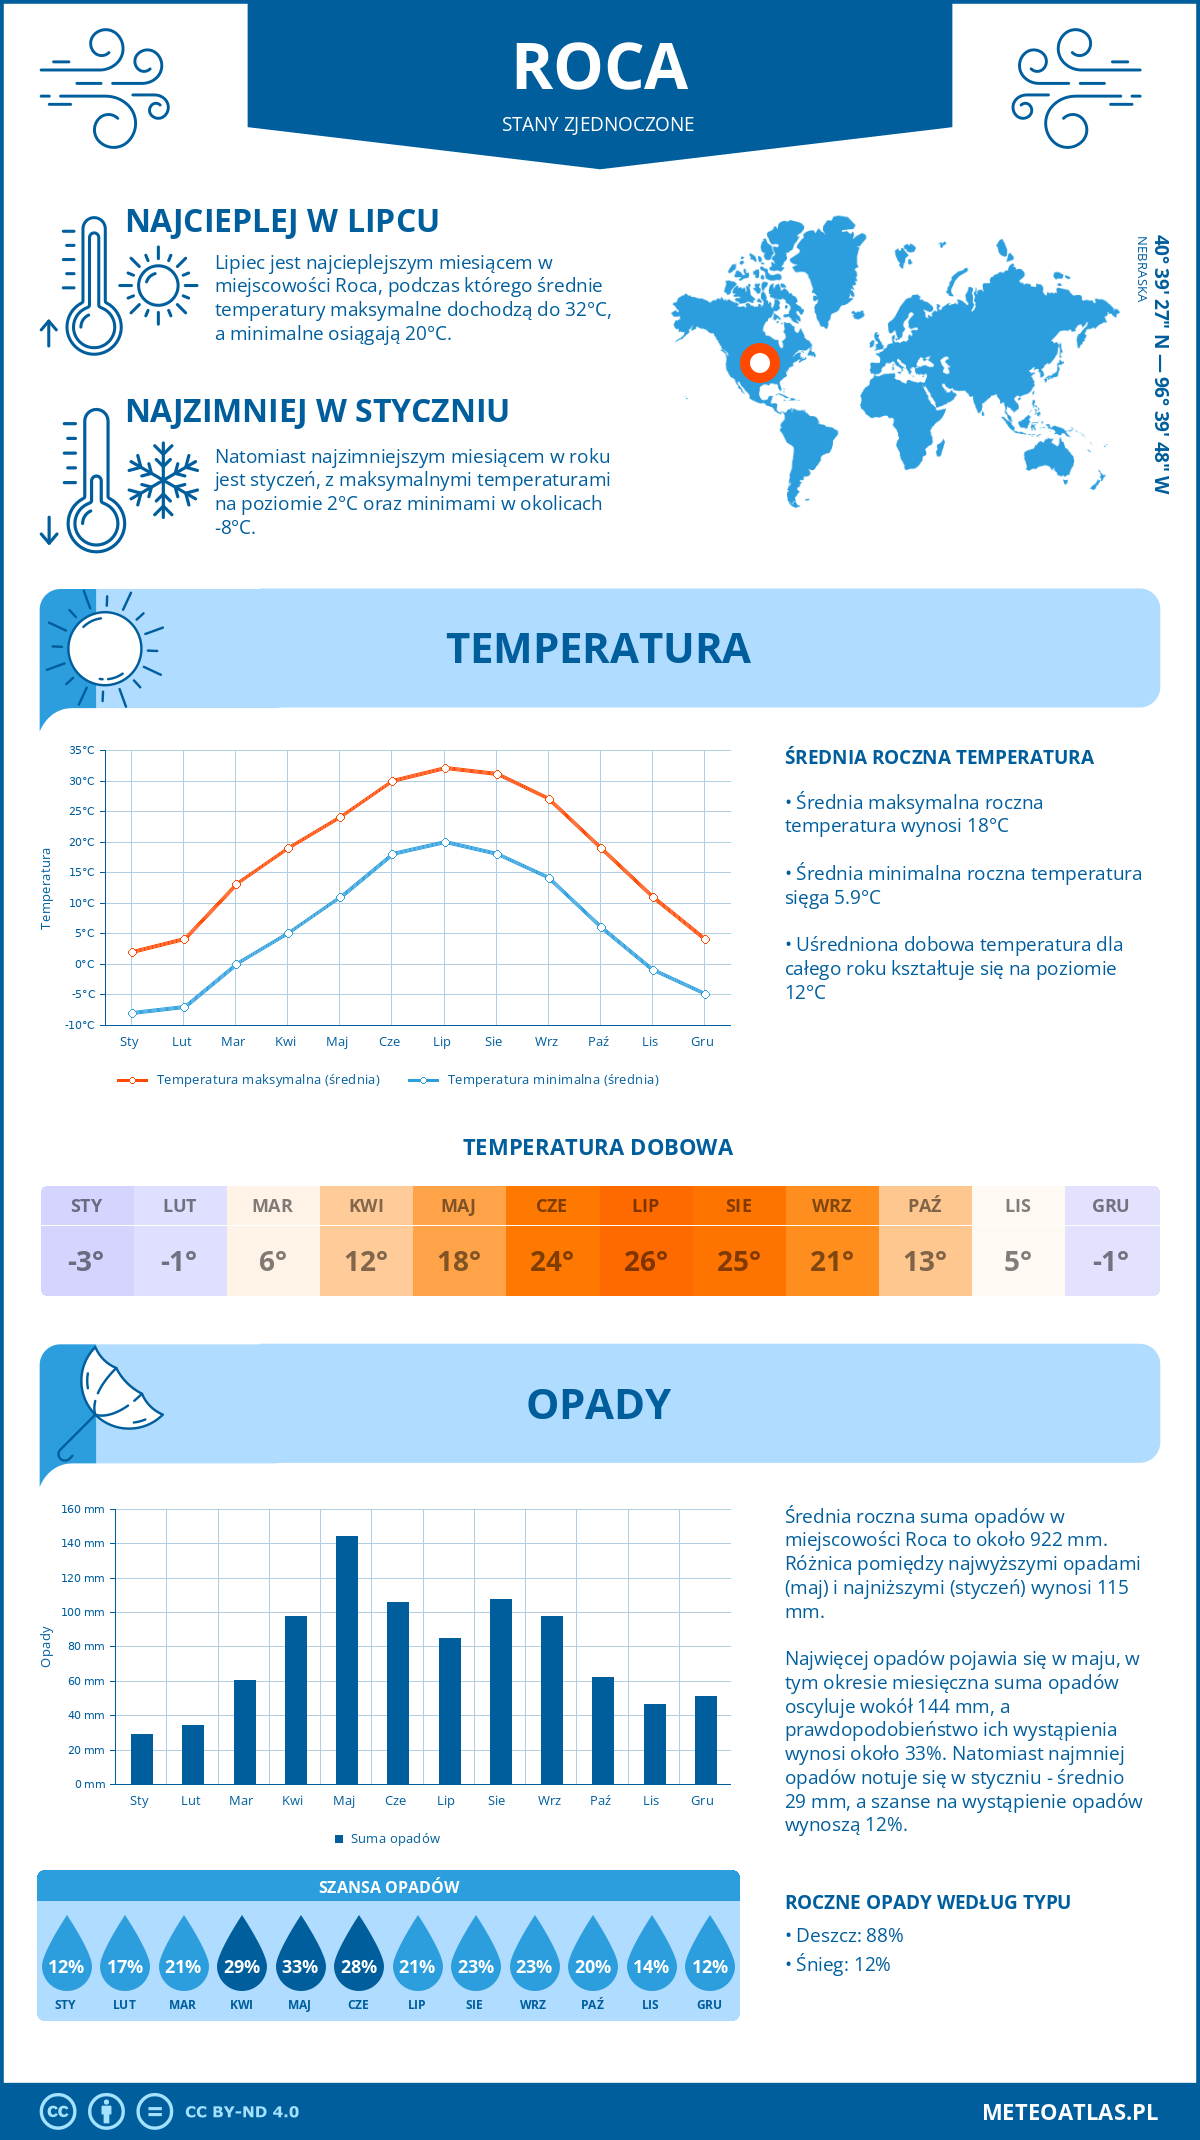 Pogoda Roca (Stany Zjednoczone). Temperatura oraz opady.